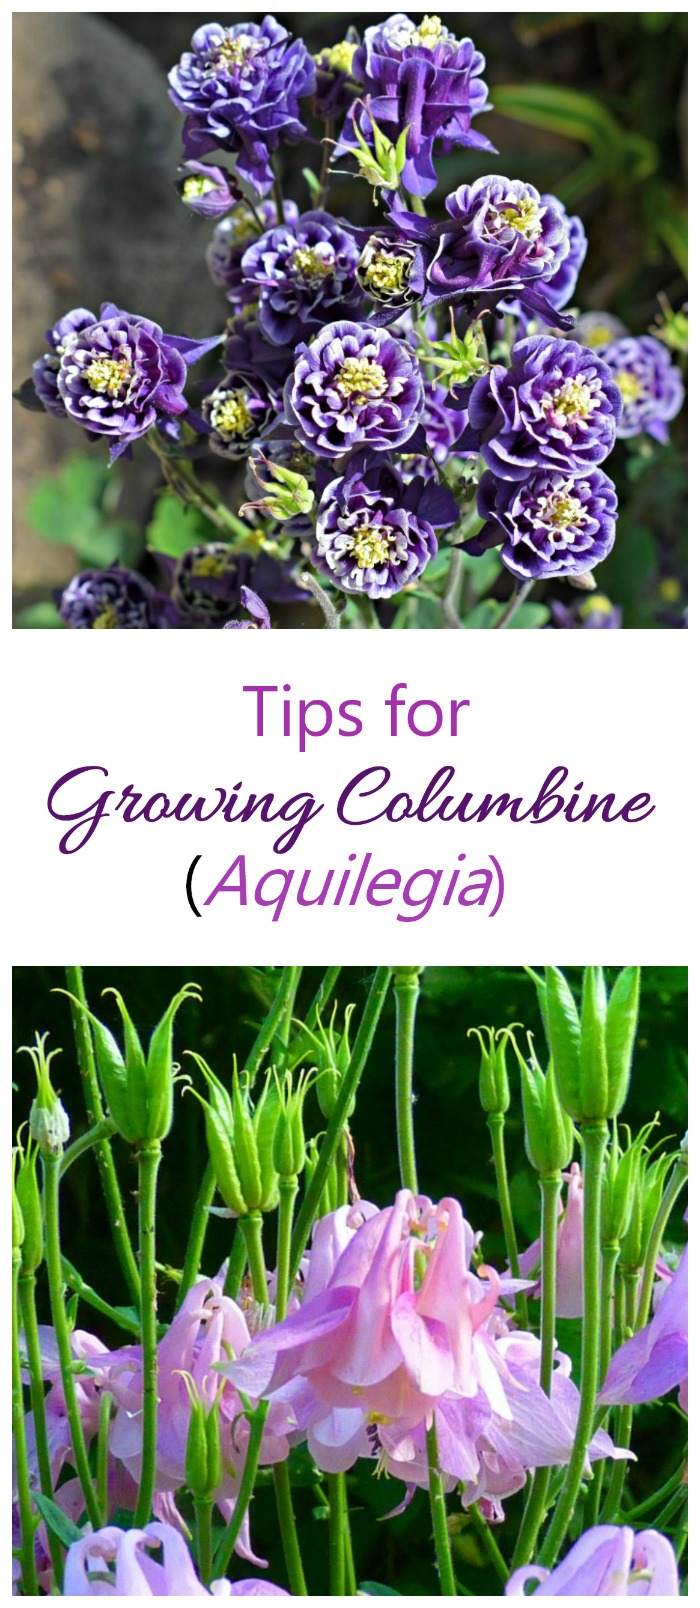 Columbine ургах - өвөрмөц хонх хэлбэртэй цэцгийн хувьд Aquilegia хэрхэн ургуулах вэ